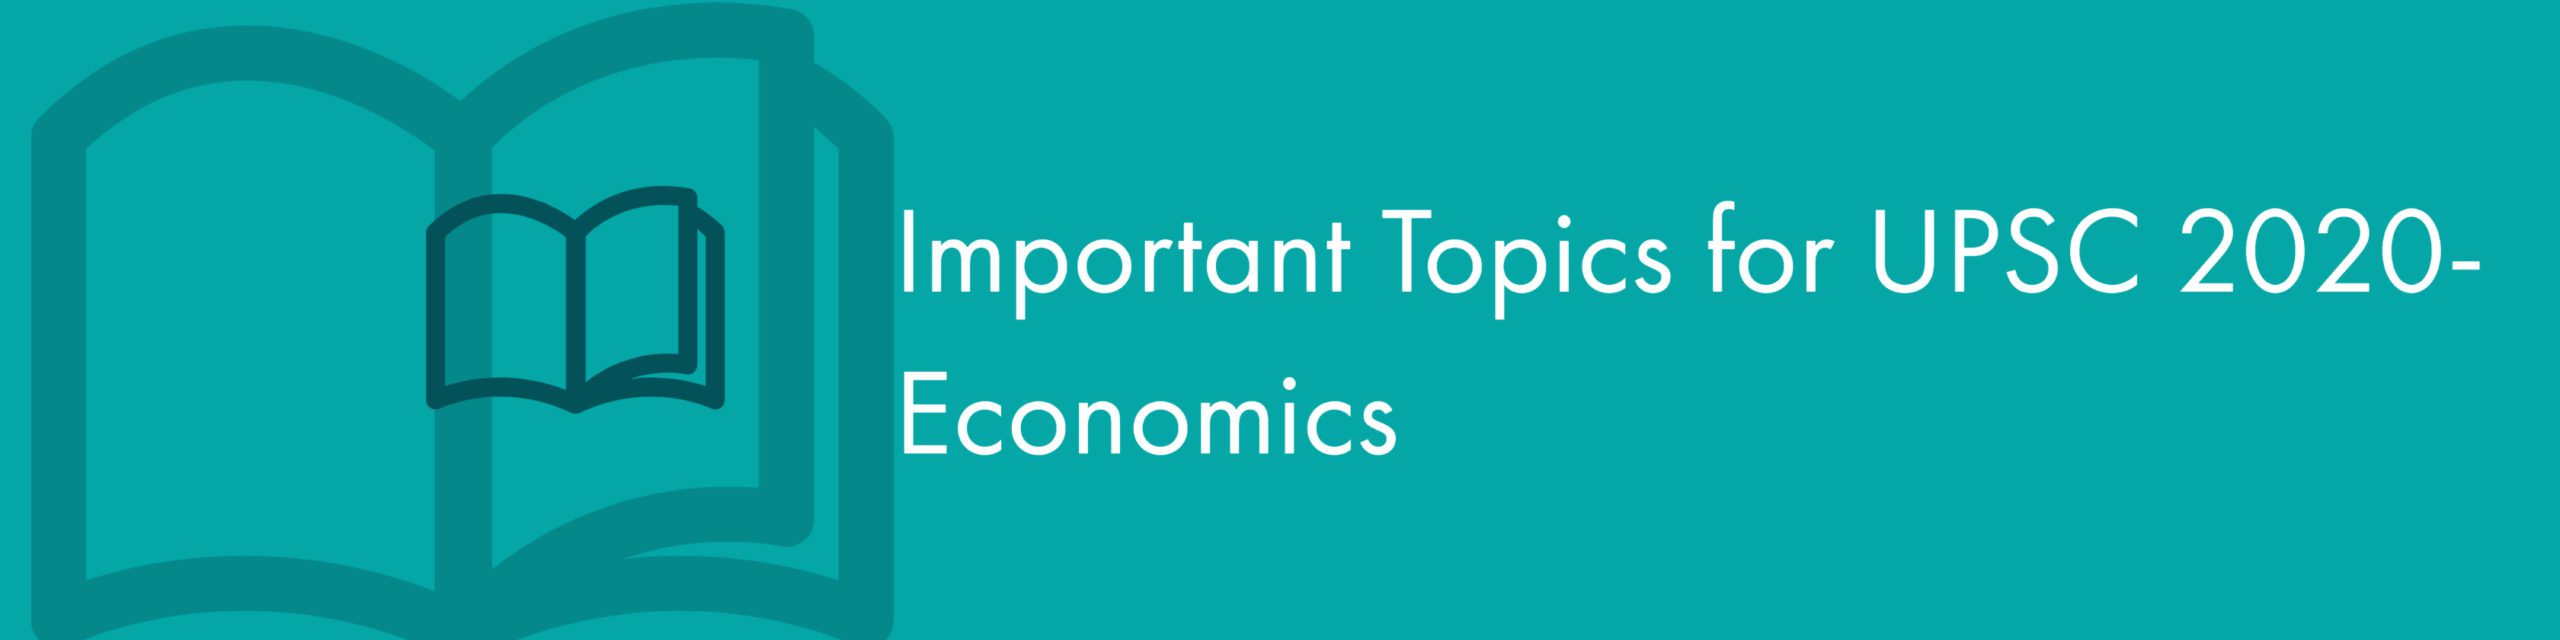 Important Topics of Economics for UPSC 2020